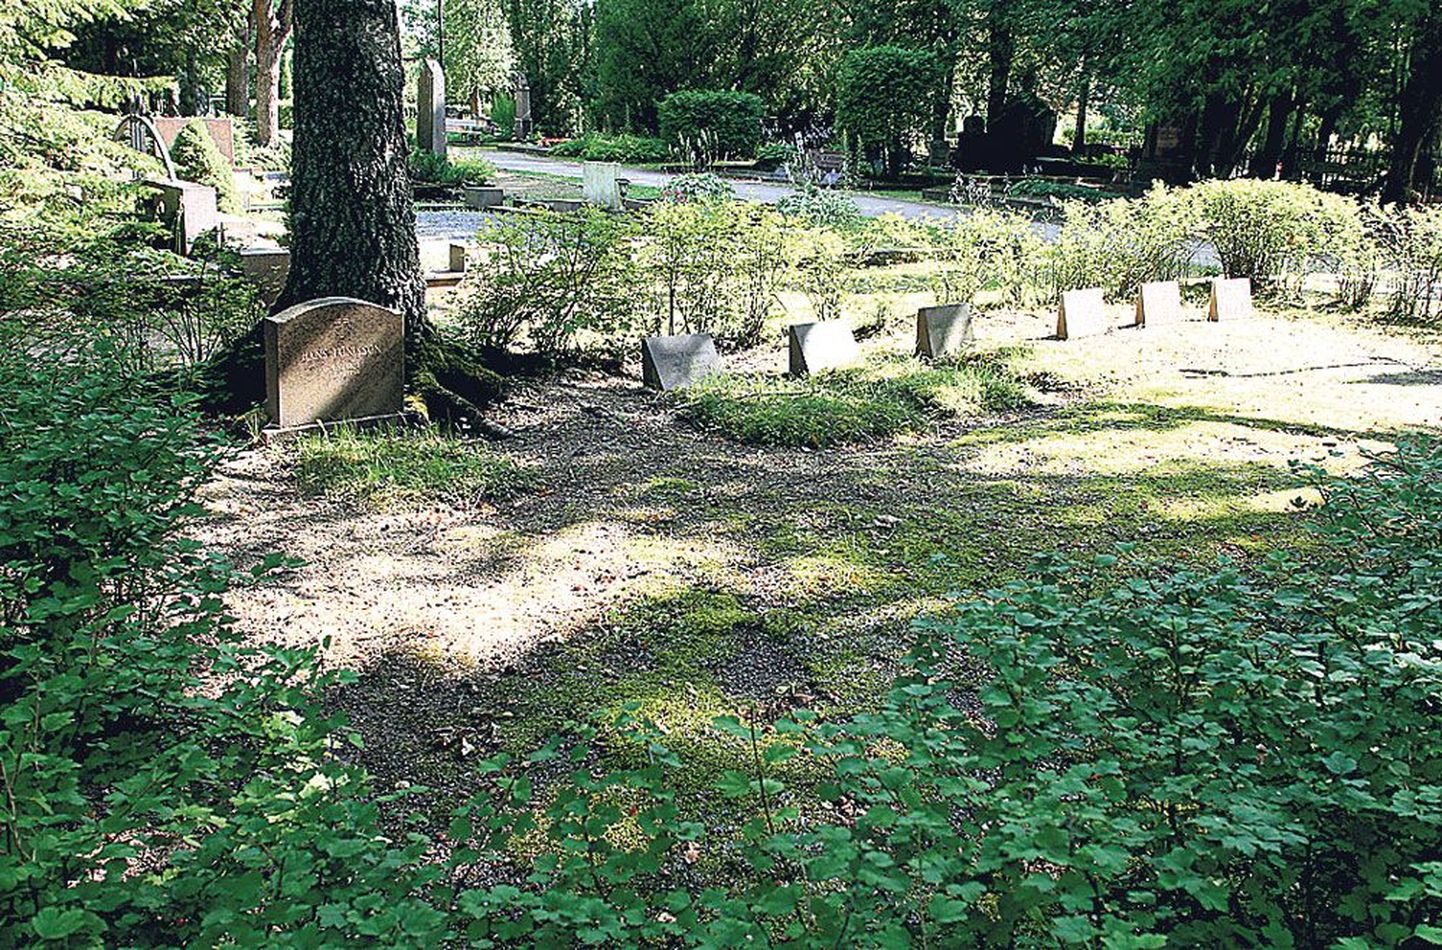 Jaan Tõnissoni ostetud hauaplatsil Raadi kalmistul on tagasihoidlik kujundus. Seal puhkavad mitmed pereliikmed.